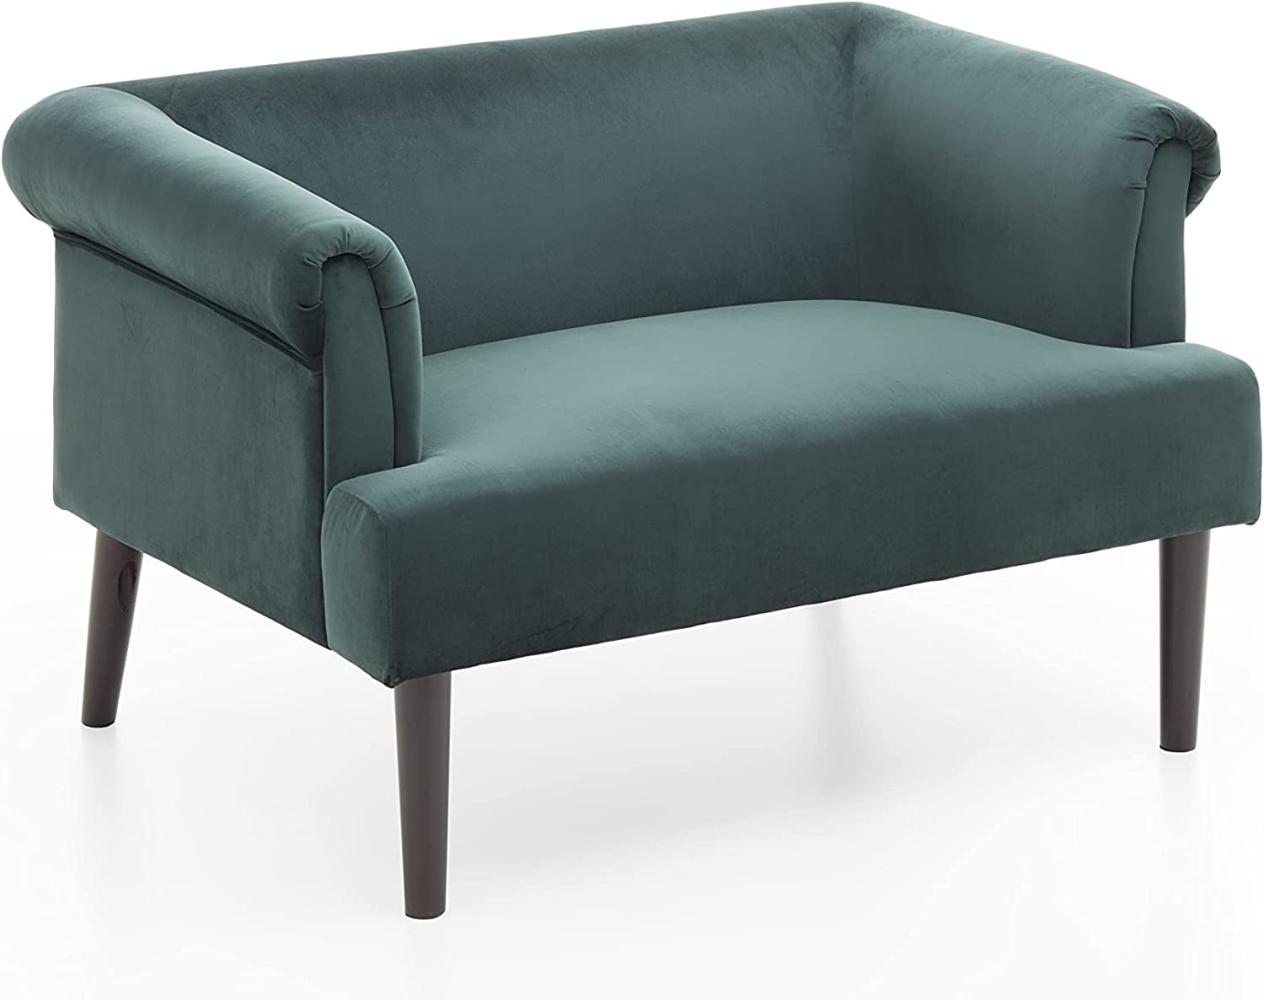 ATLANTIC home collection Sessel kaufen CHECK24 – günstig bei Preisvergleich 